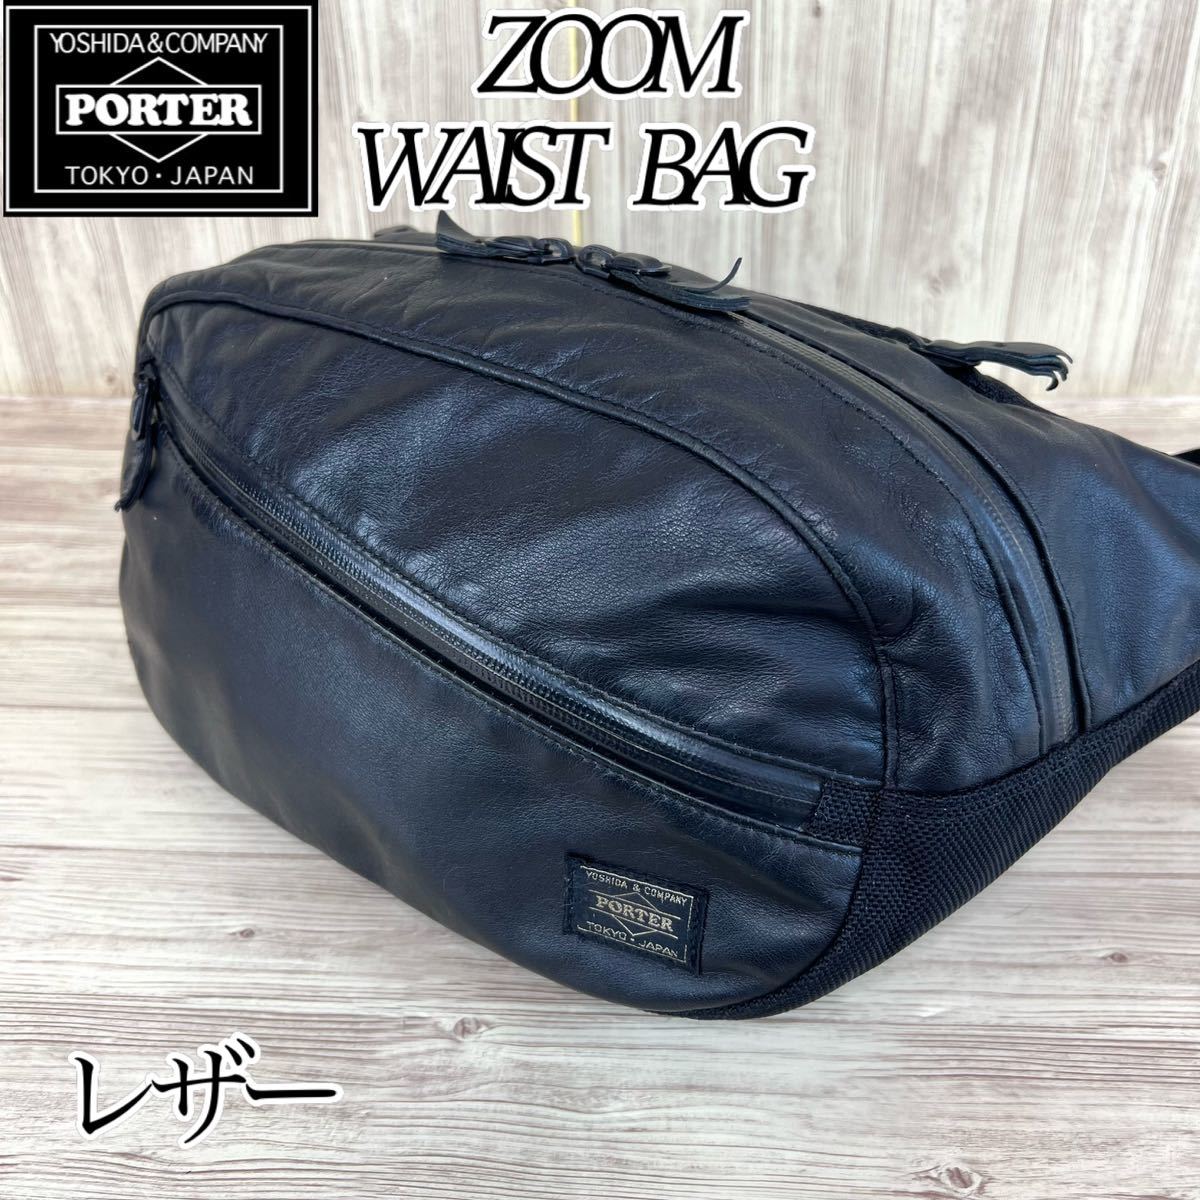 【廃盤 希少】PORTER ZOOM WAIST BAG ポーター - ヤフオク!